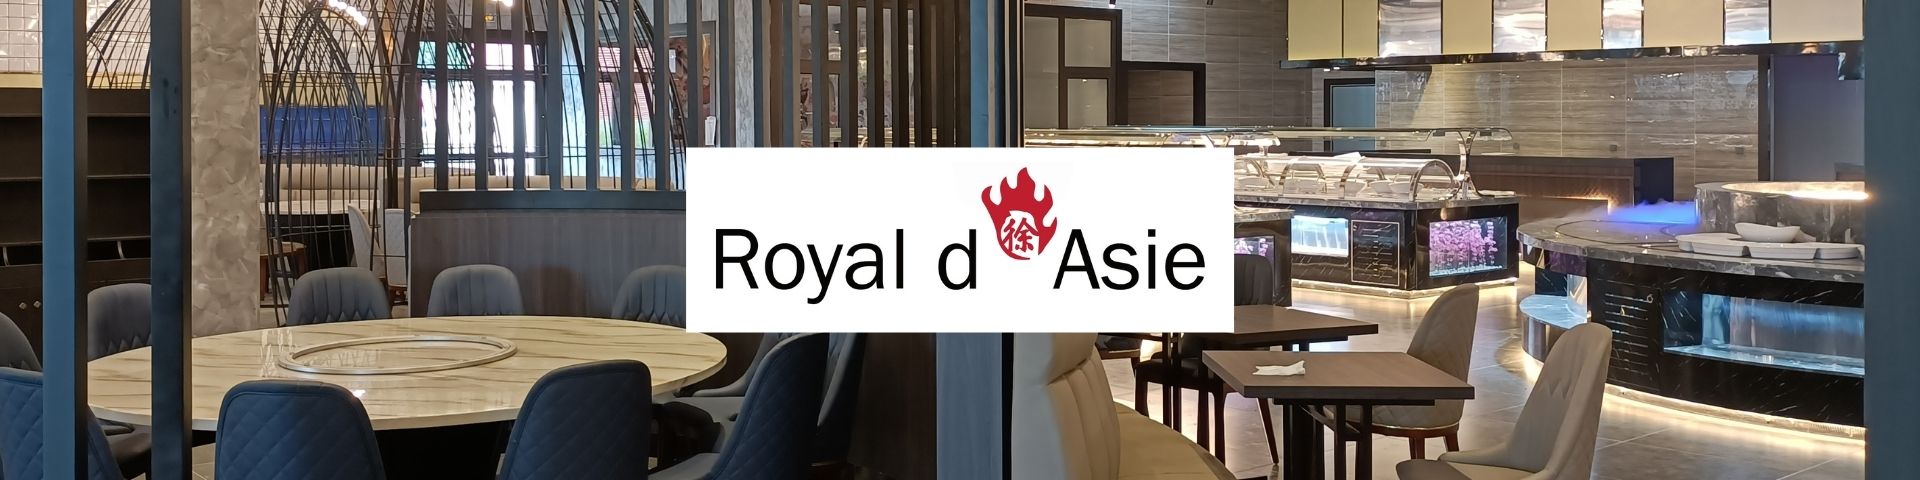 Royal d'Asie buffet